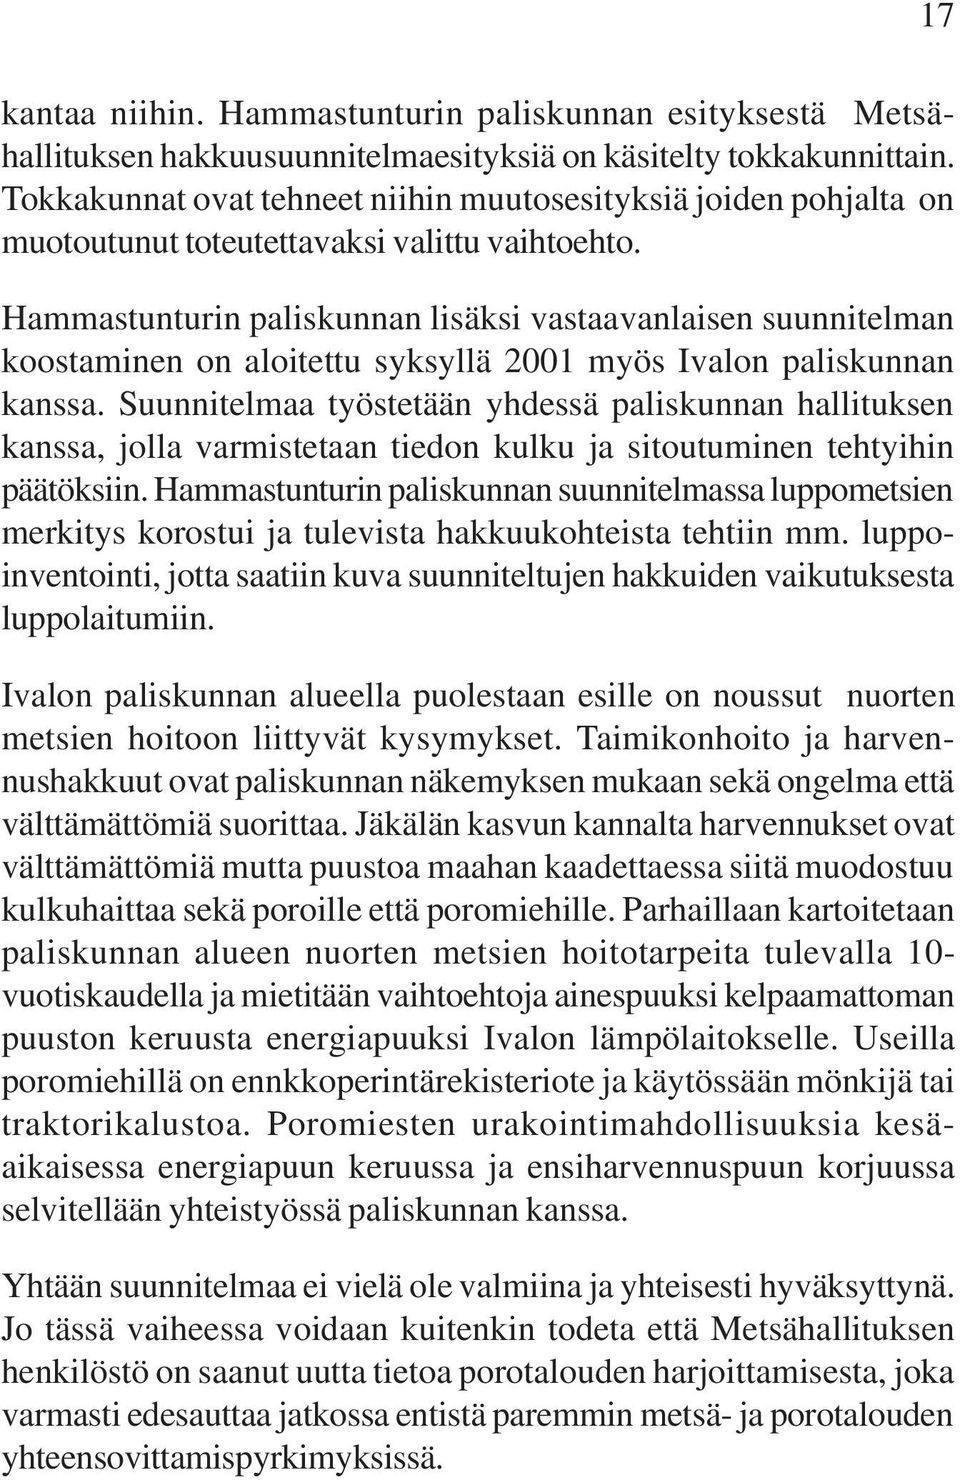 Hammastunturin paliskunnan lisäksi vastaavanlaisen suunnitelman koostaminen on aloitettu syksyllä 2001 myös Ivalon paliskunnan kanssa.